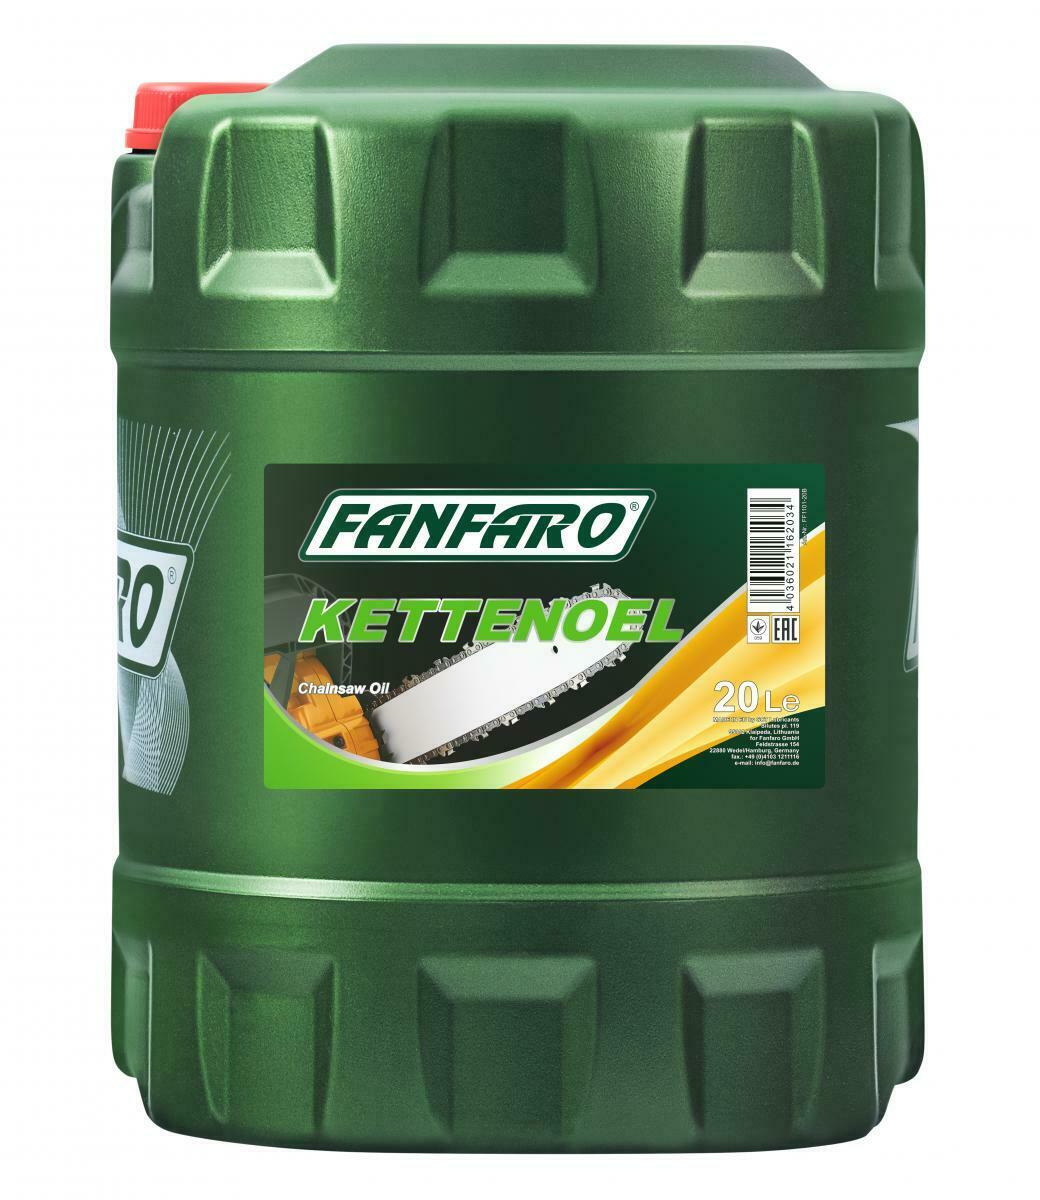 20 Liter FANFARO Kettenöl / Haftöl für Motorsägen / mineralisches Sägekettenöl